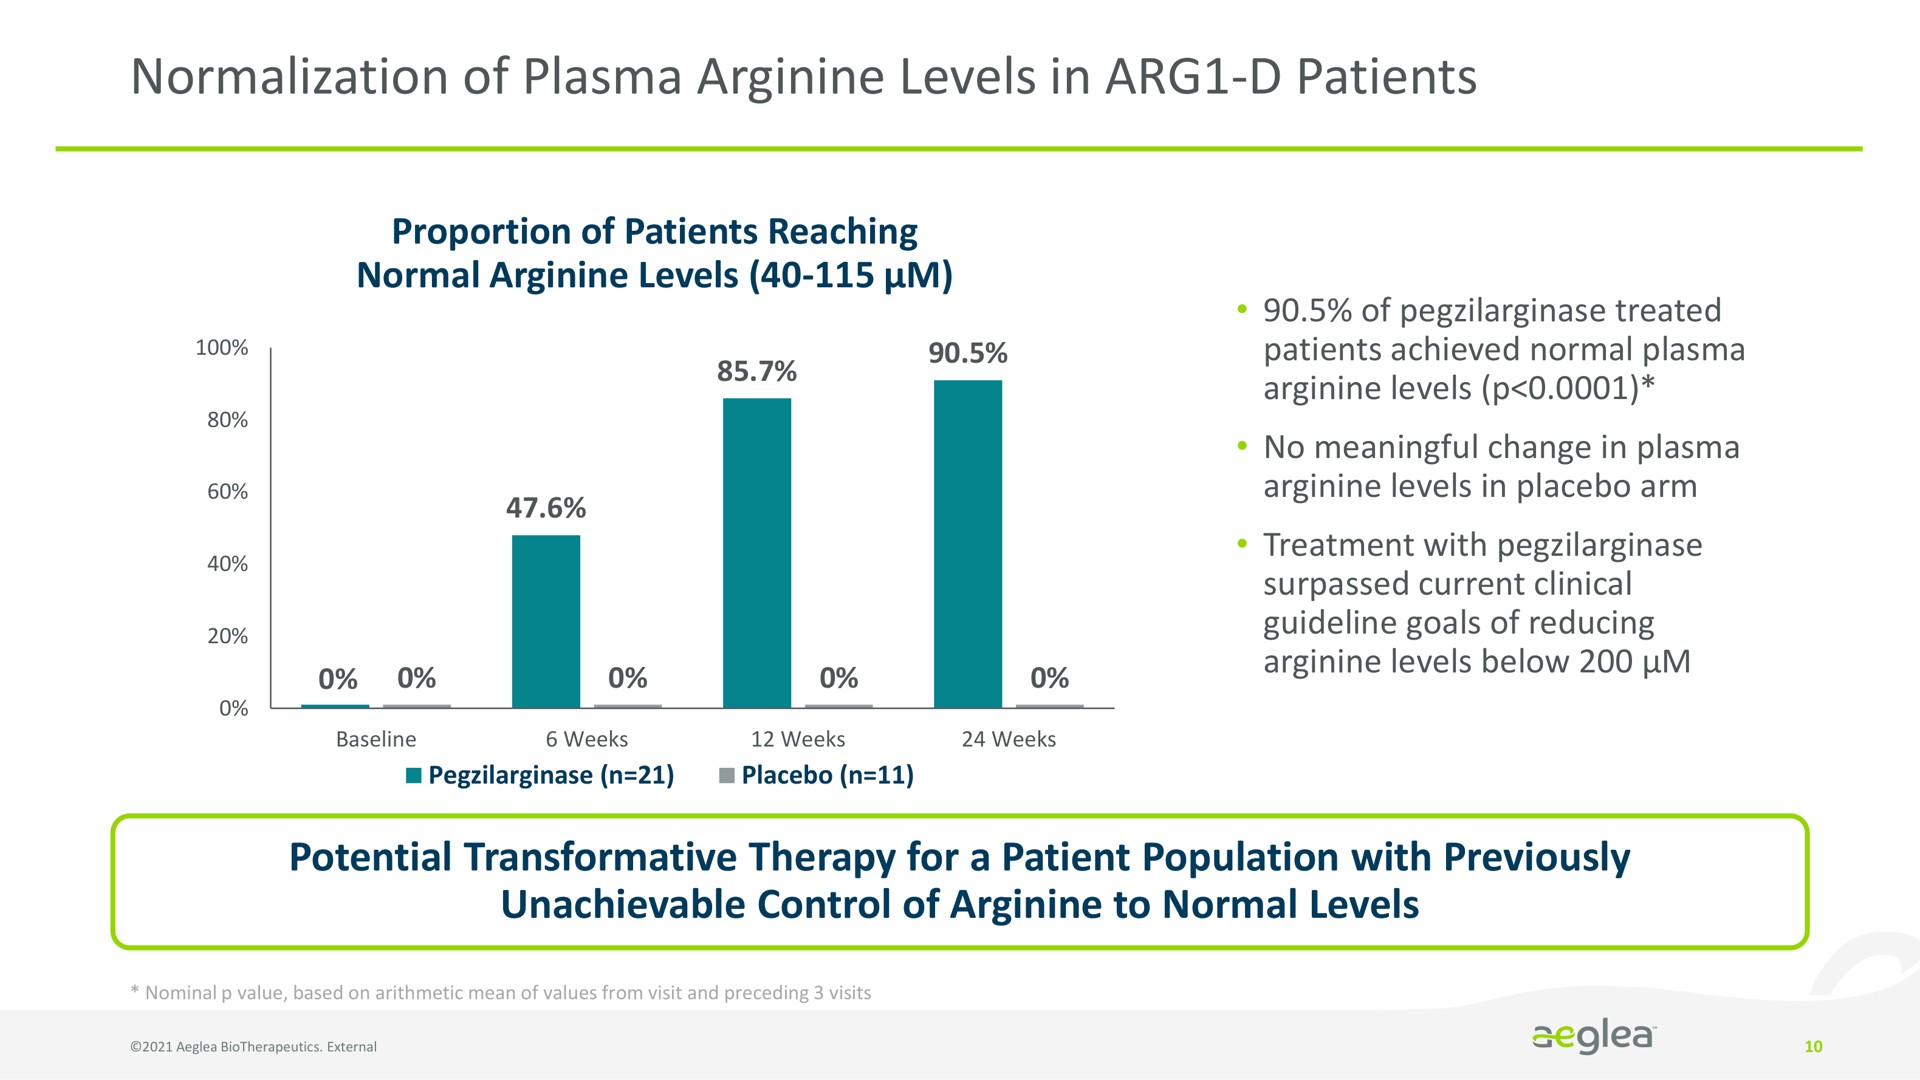 normalization of plasma arginine levels in patients | Aeglea BioTherapeutics